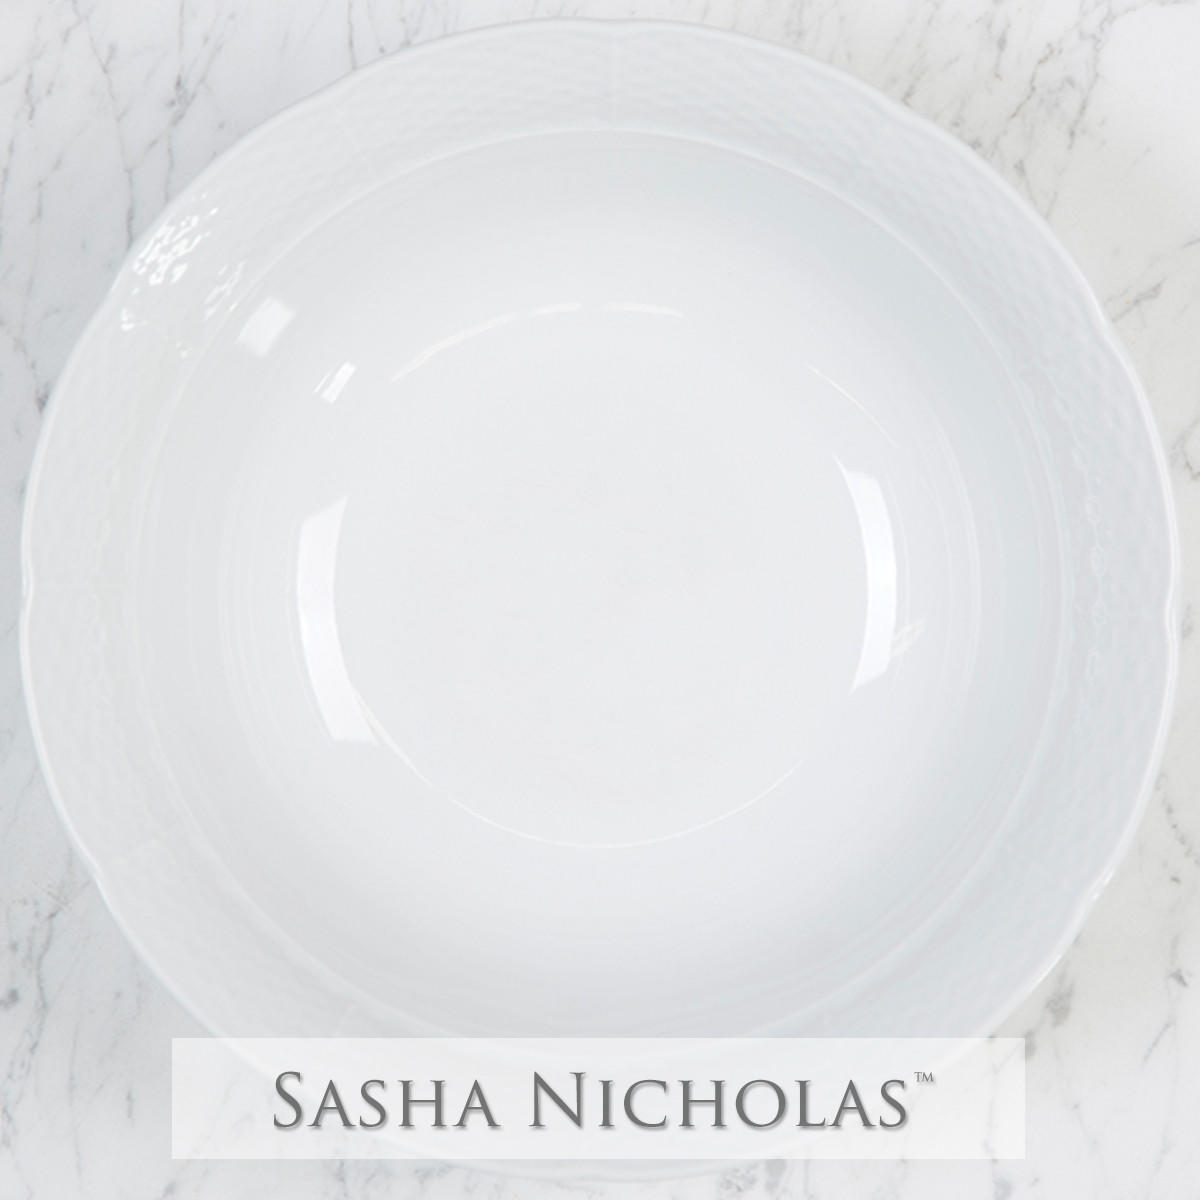 Weave Large Serving Bowl, SNW161, Sasha Nicholas